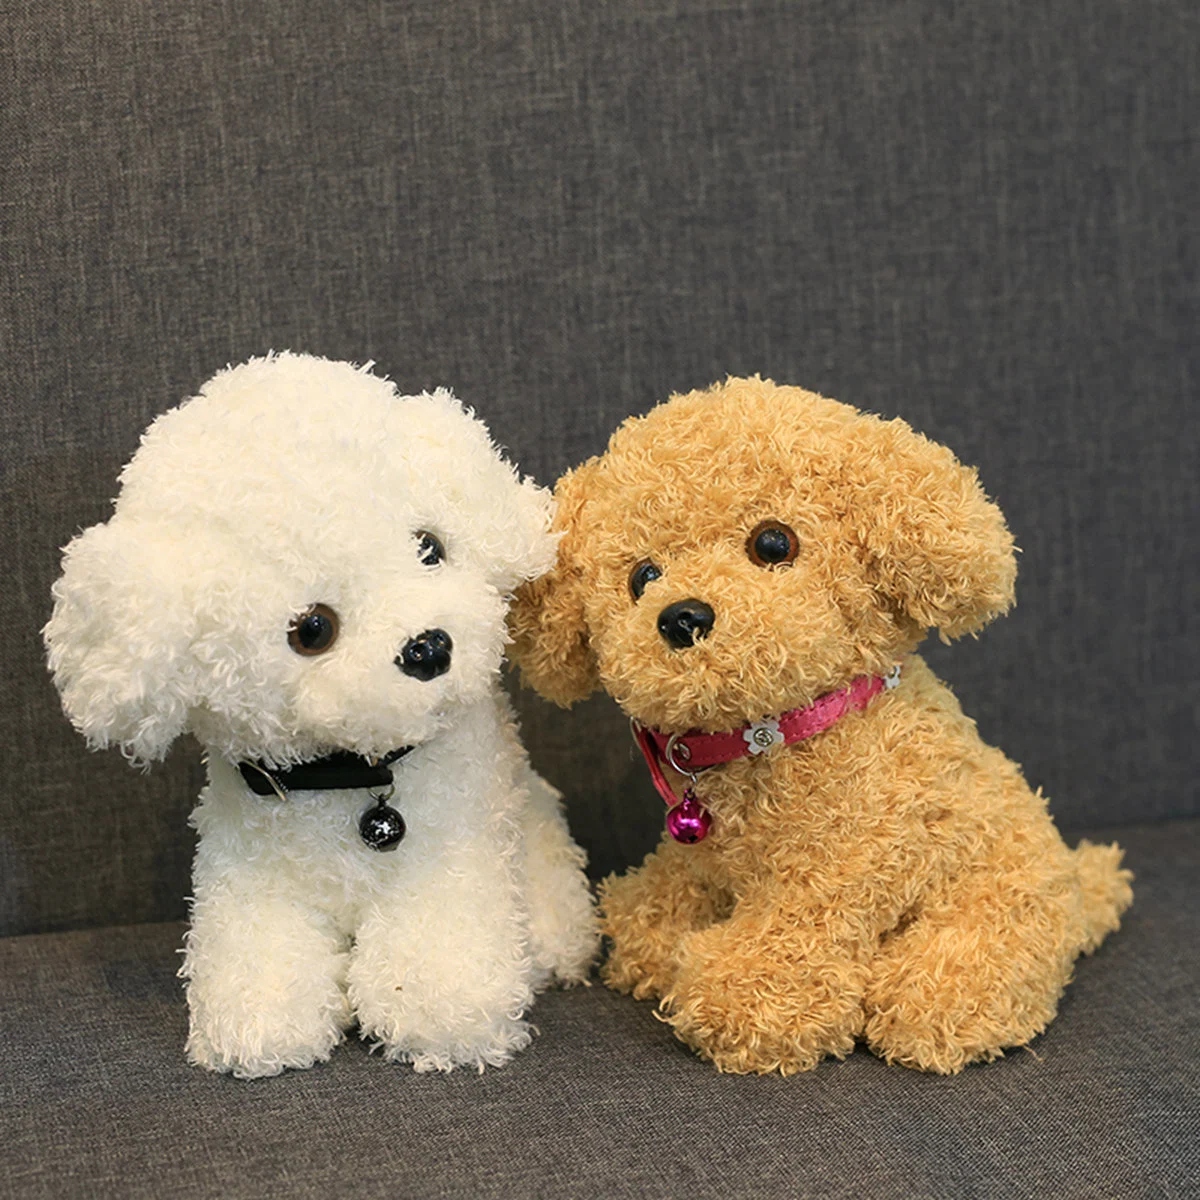 22-30cm Soft Stuffed Plush Baby Toy Realistic Teddy Dog